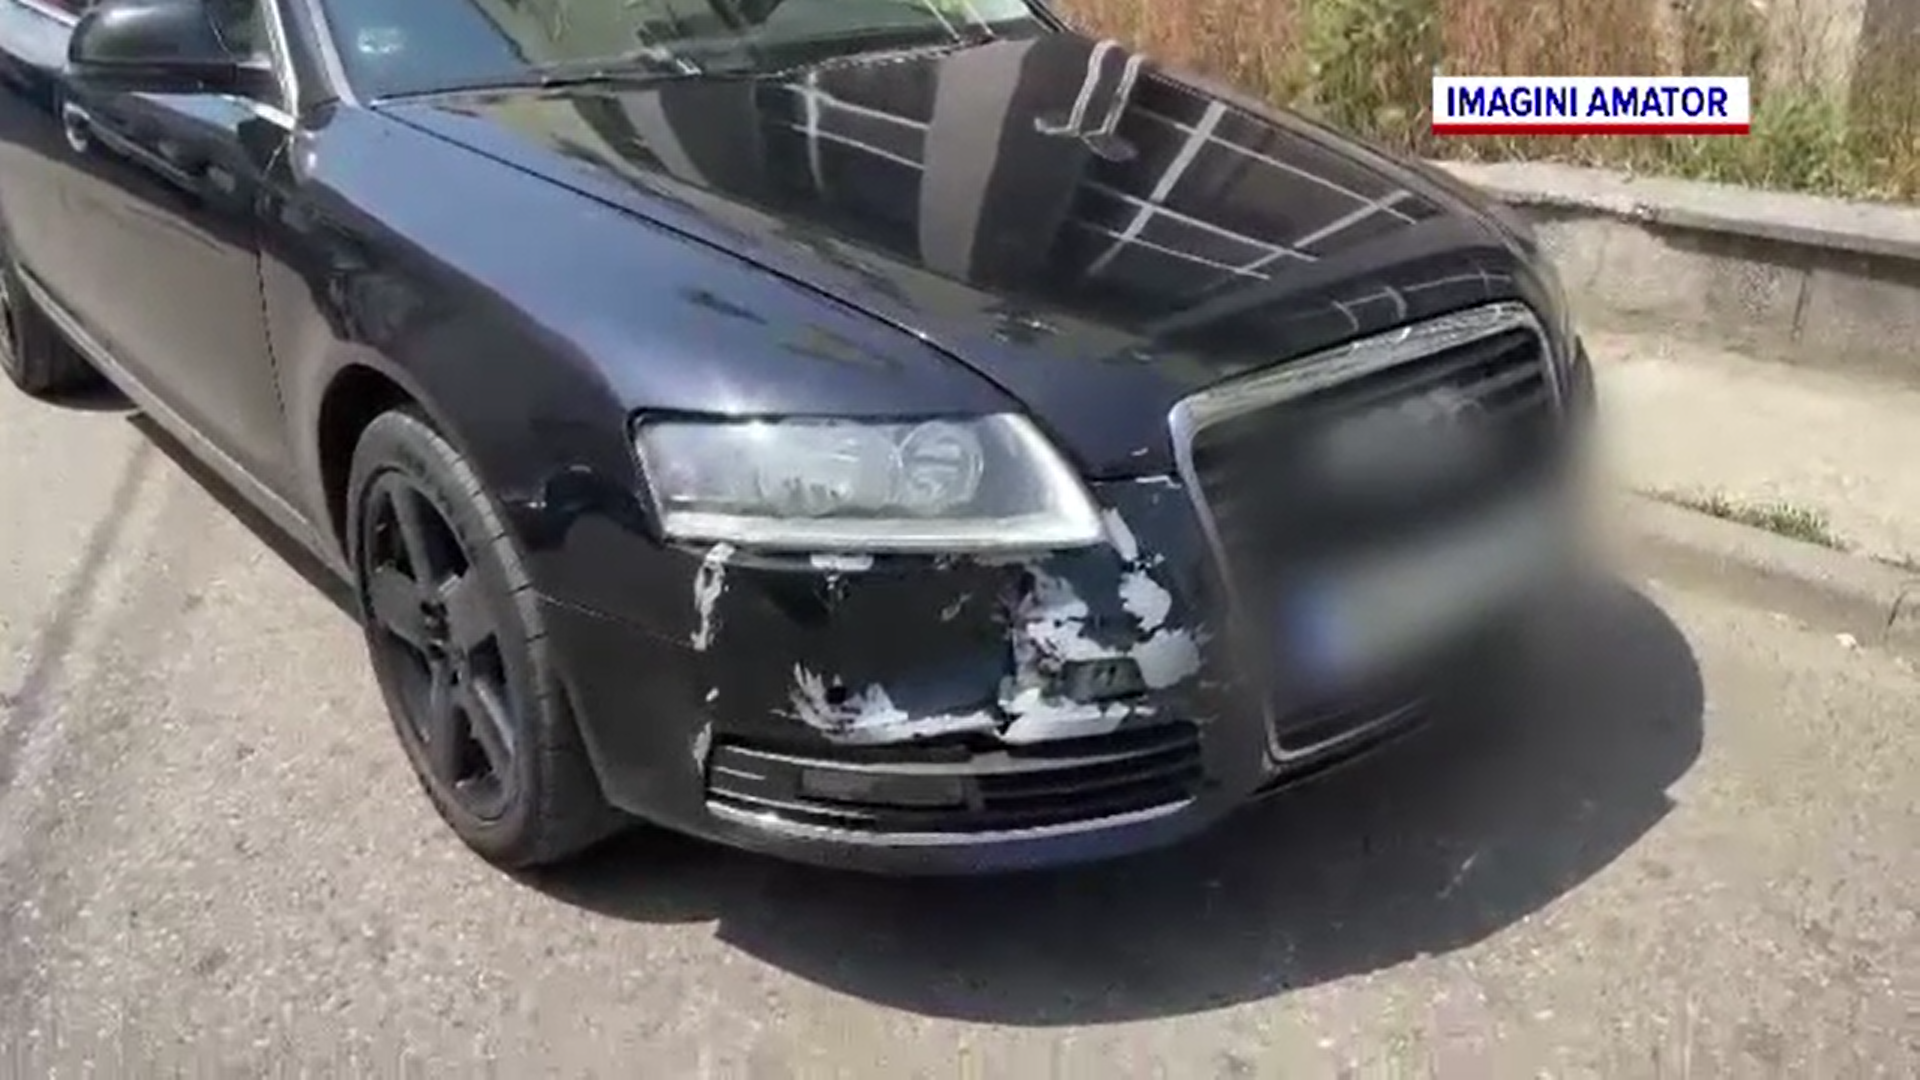 Un polițist din Timiș a provocat un accident după ce s-a urcat băut la volan